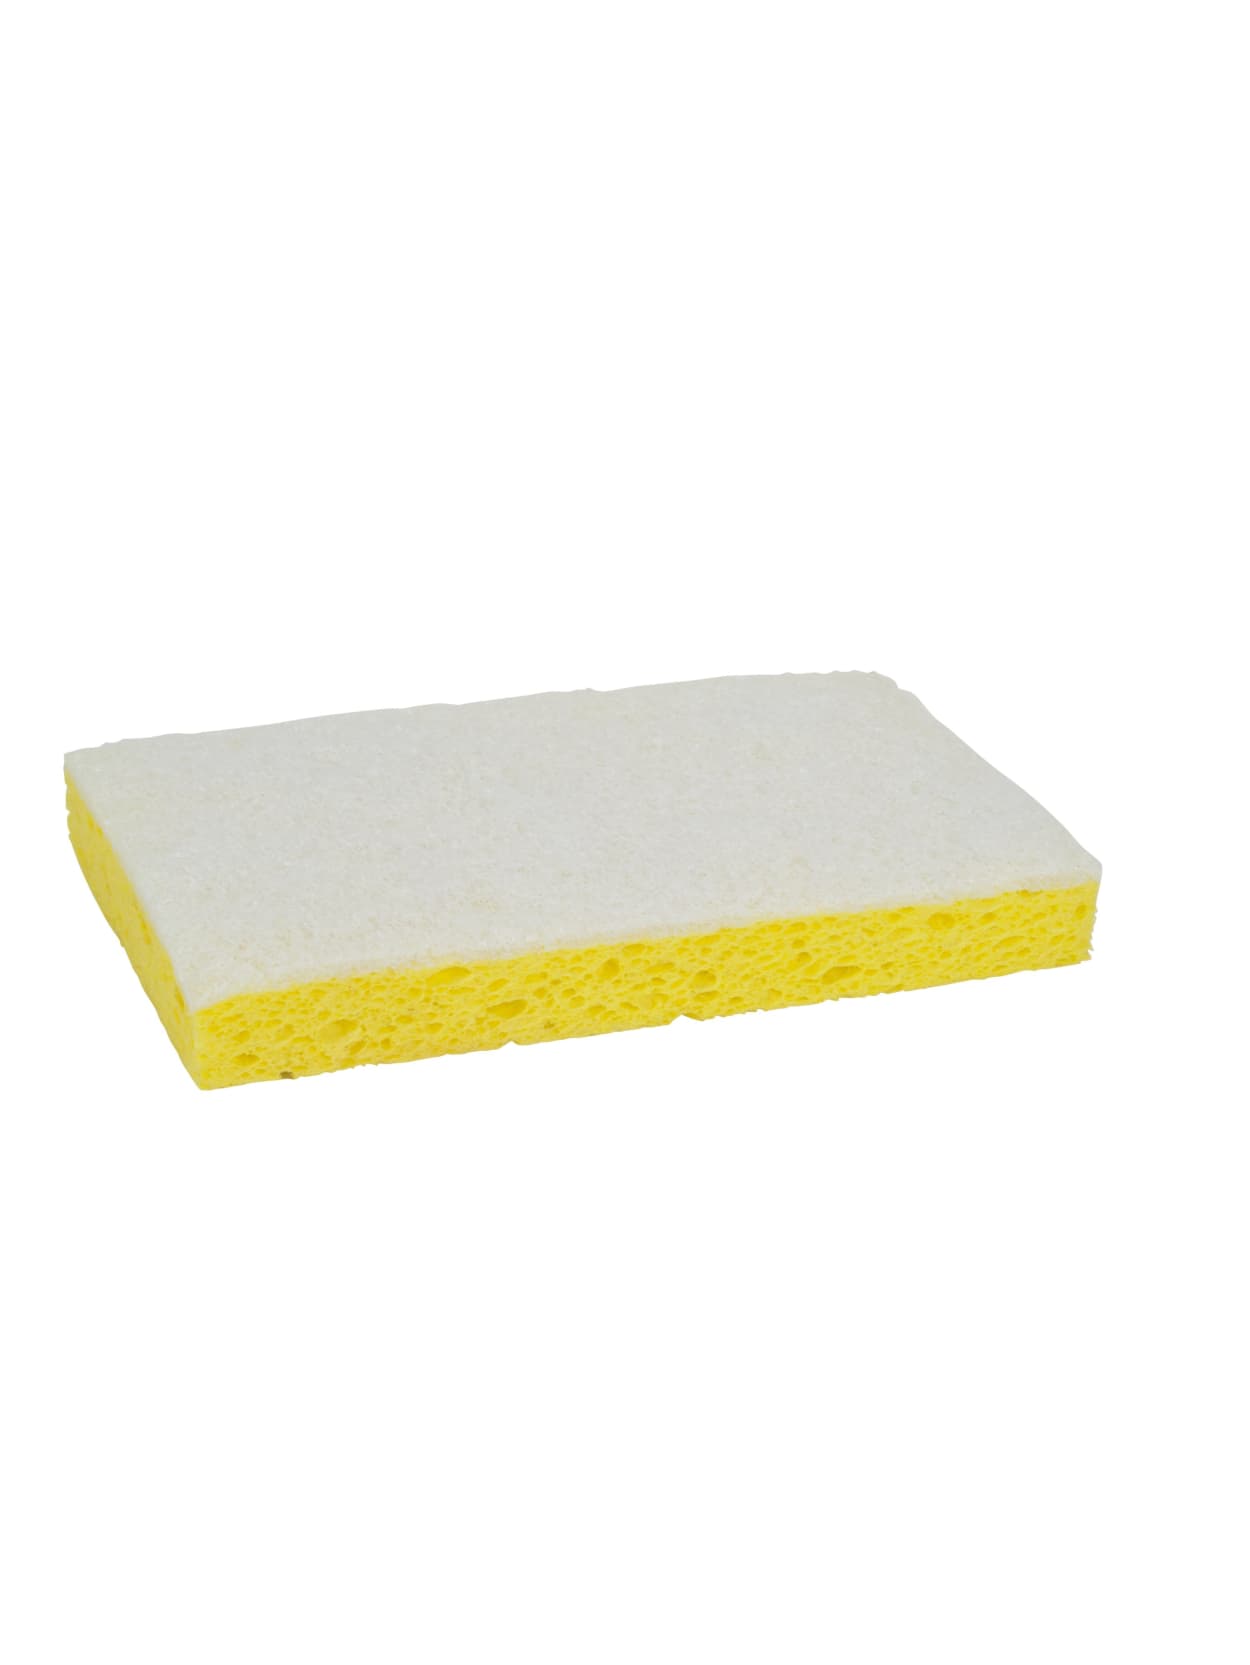 scrubbing sponge